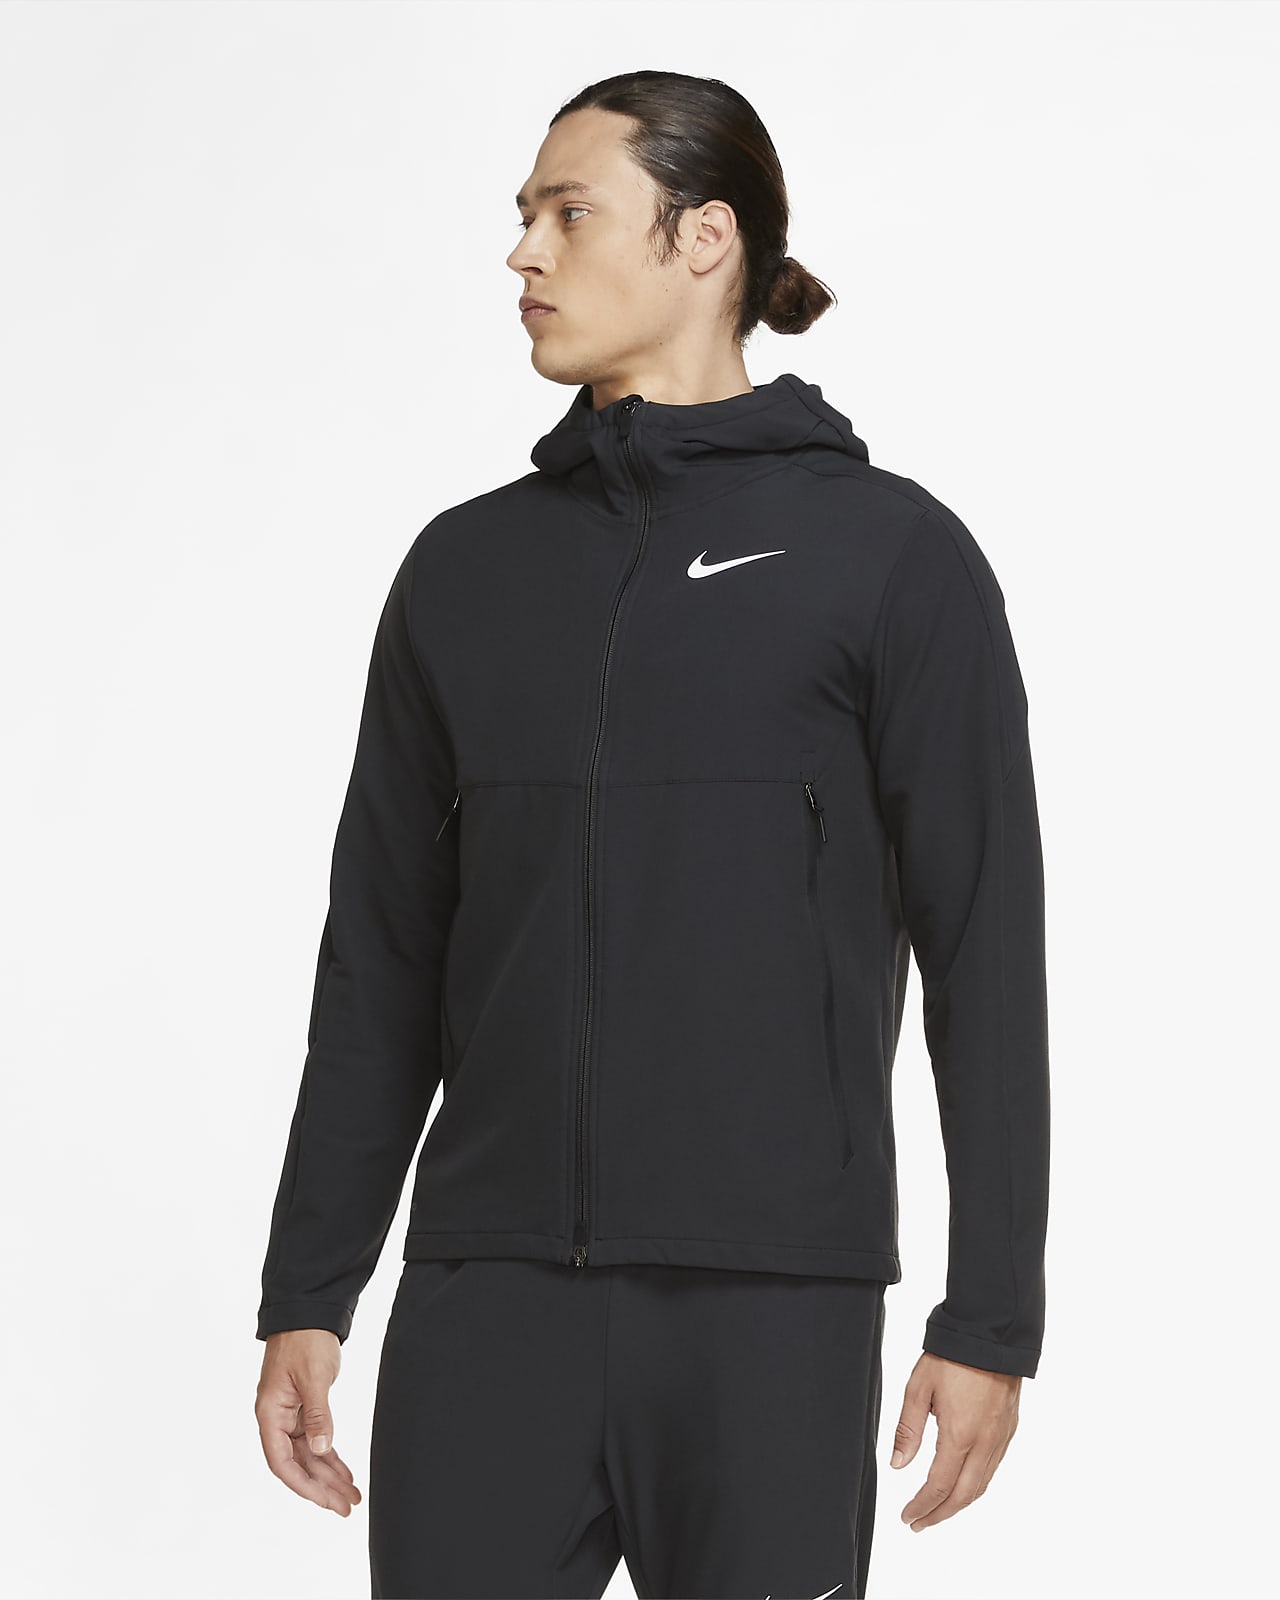 Vävd vinterträningsjacka Nike för män